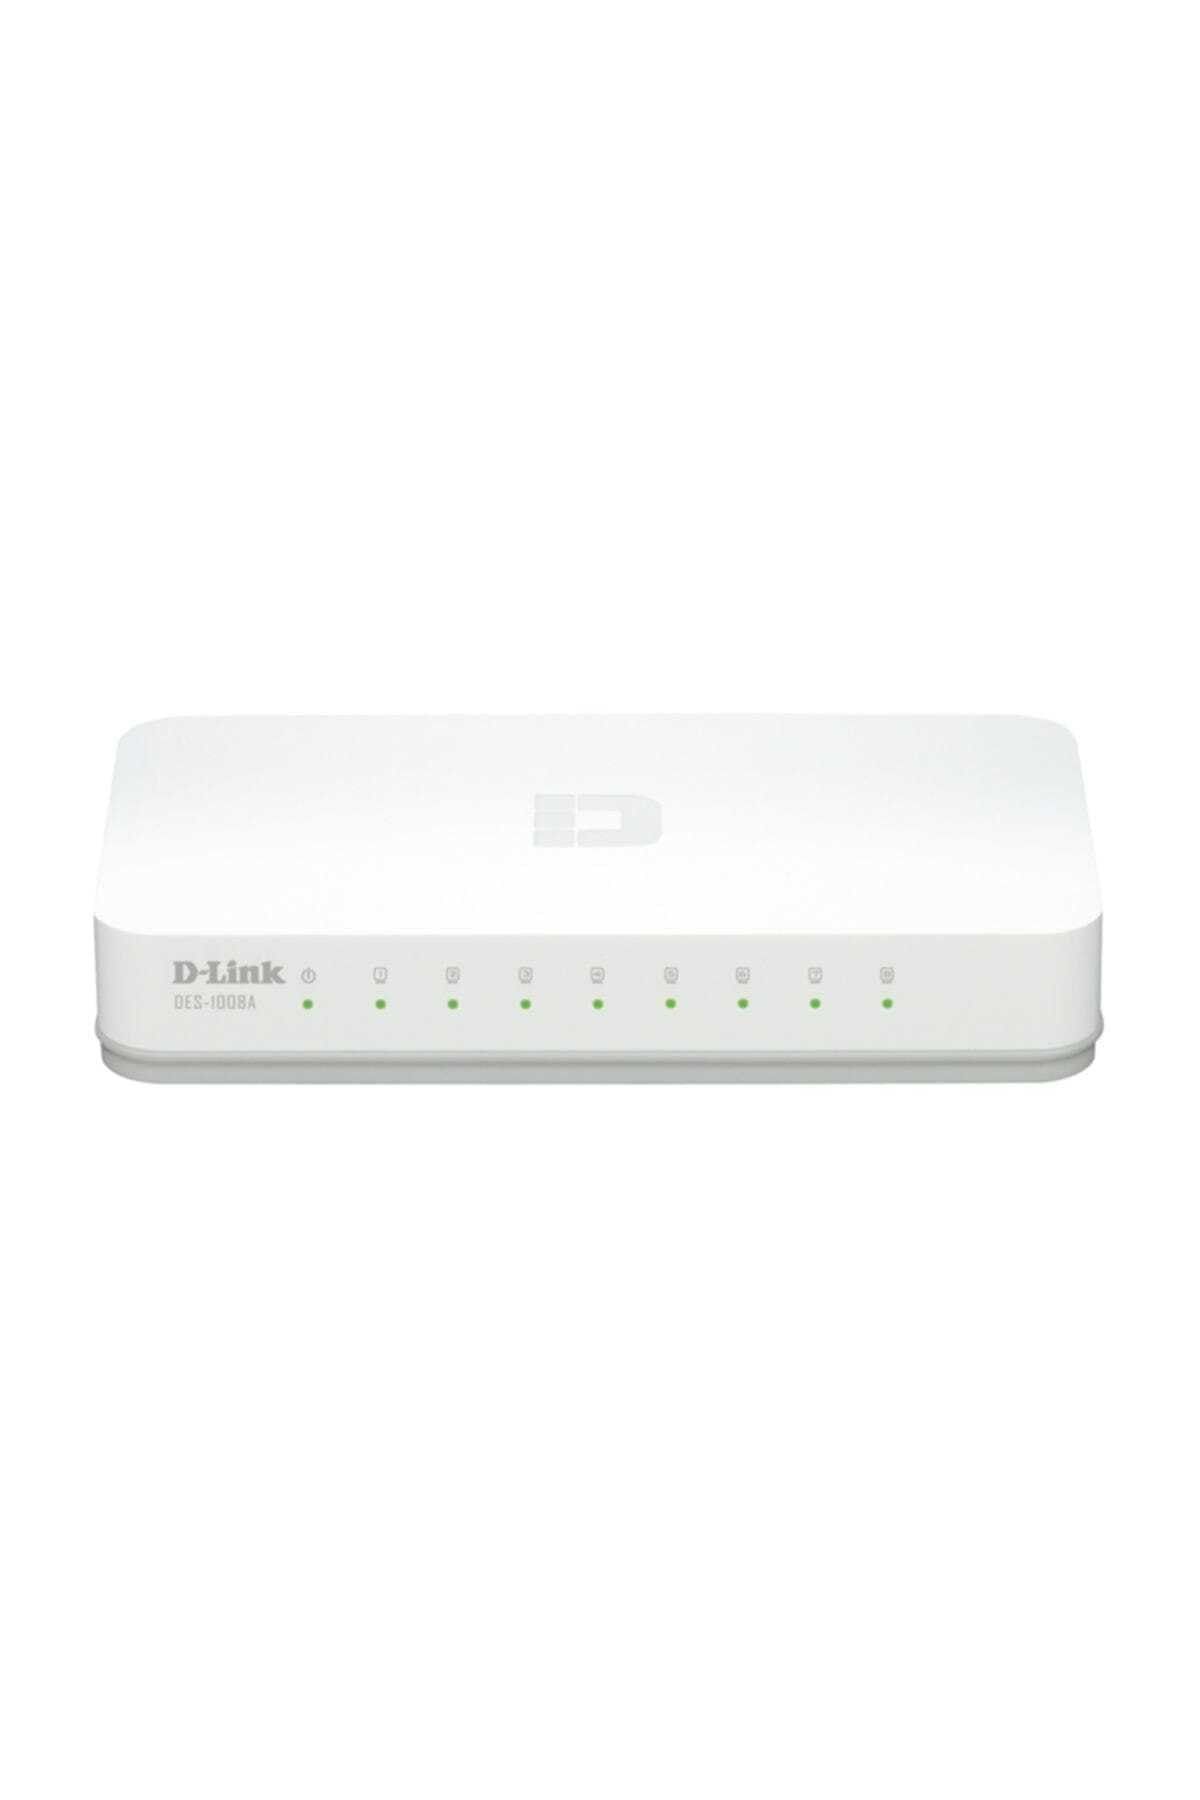 D-Link DES-1008C 8 Port 10/100Mbps Switch